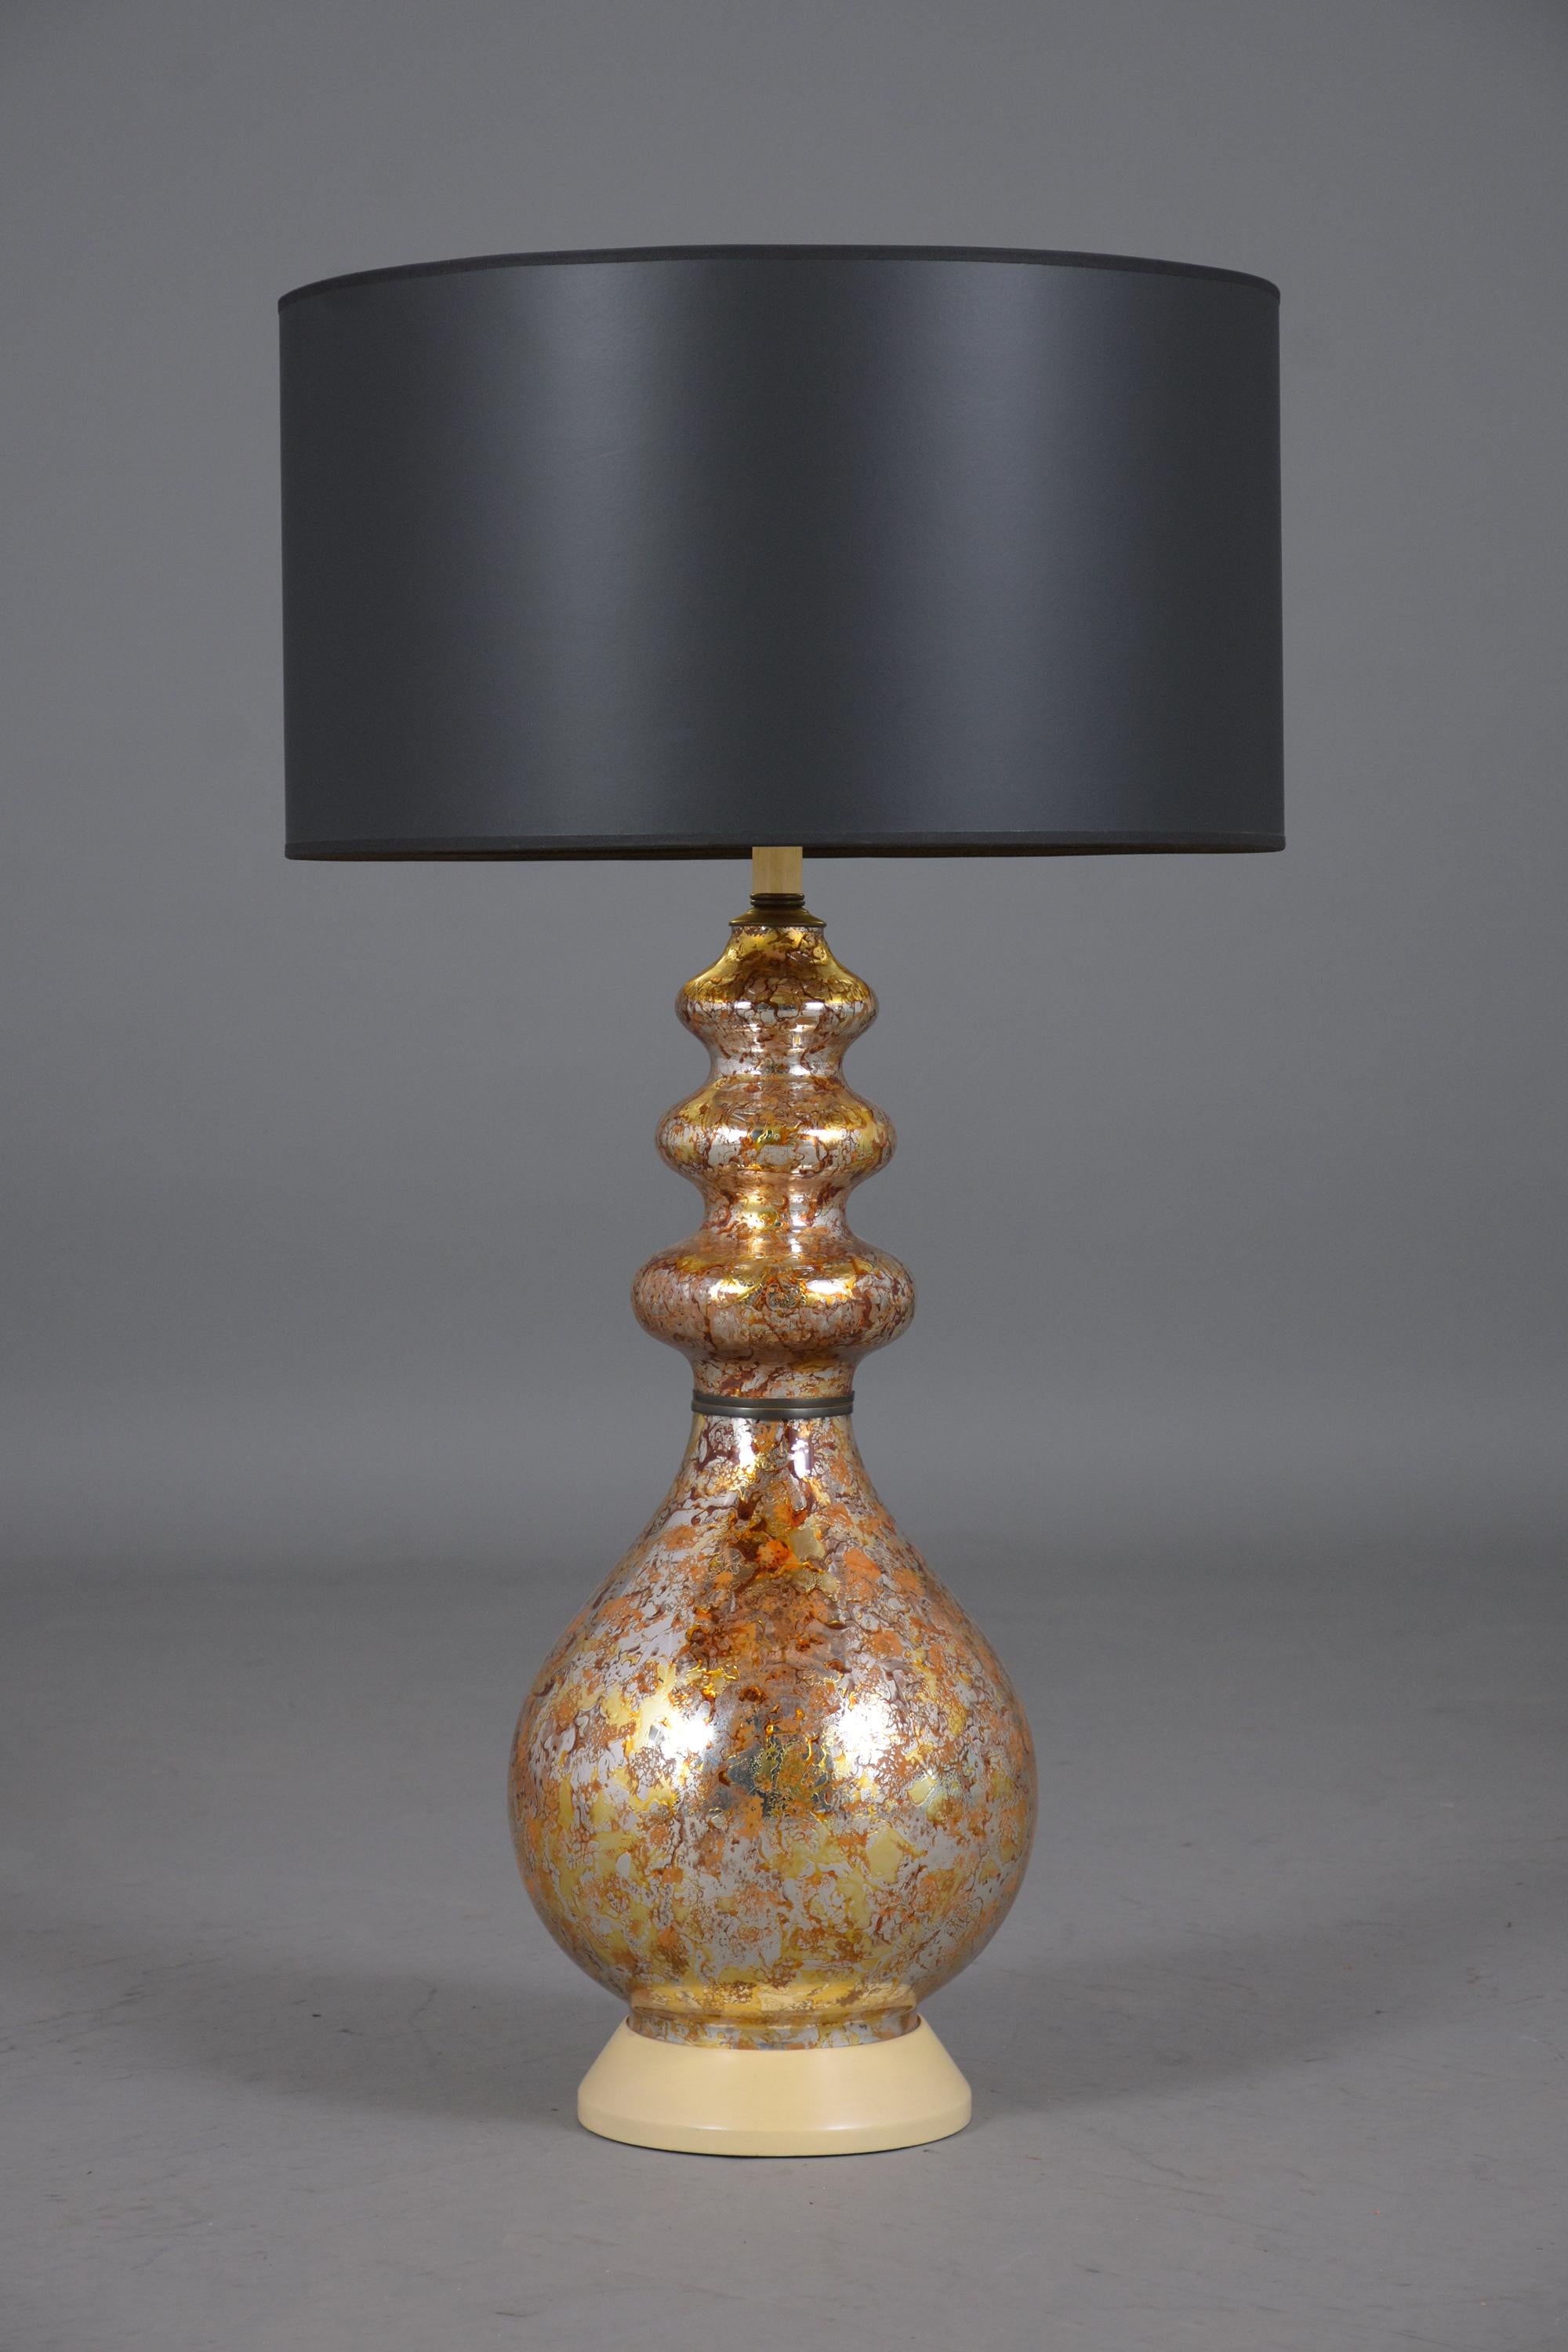 Peppen Sie Ihr Zuhause mit unseren exklusiven Modern Glass Table Lamps auf, einer Mischung aus zeitgenössischem Design und funktionaler Kunstfertigkeit. Diese Lampen wurden aus hochwertigem Glas gefertigt, das sowohl Langlebigkeit als auch Eleganz